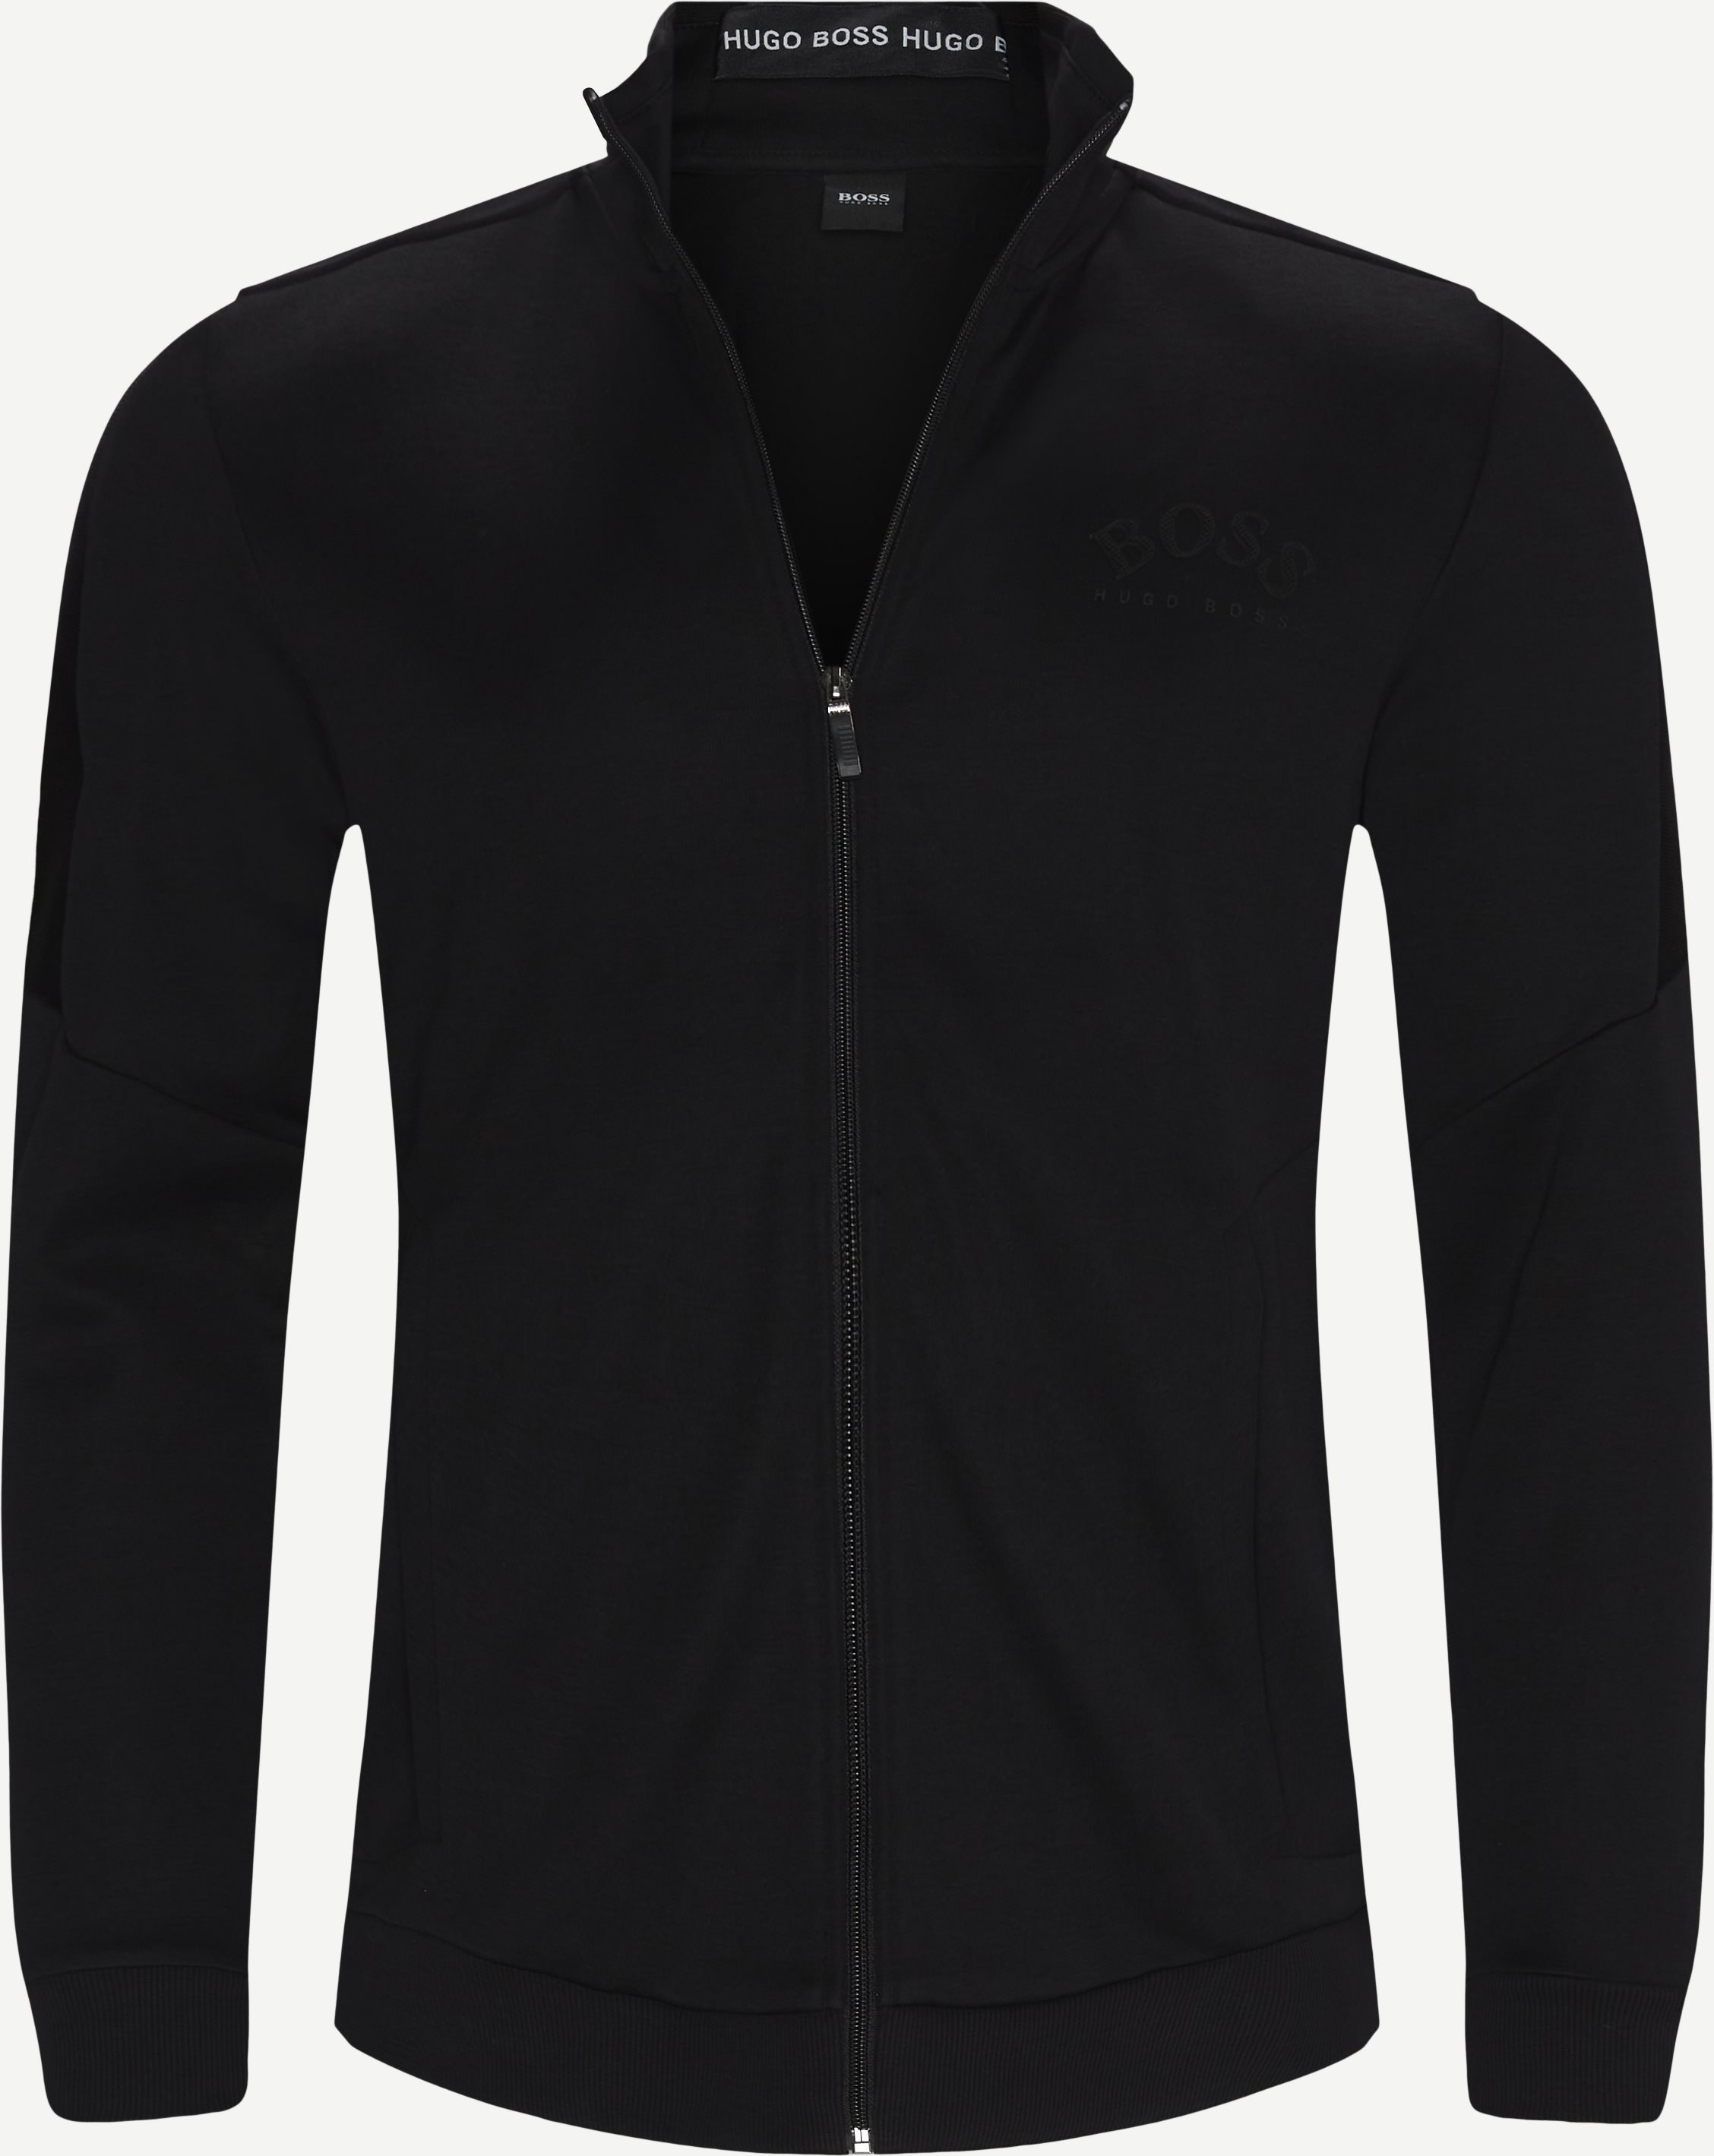 Skaz-Sweatshirt mit Reißverschluss - Sweatshirts - Regular fit - Schwarz